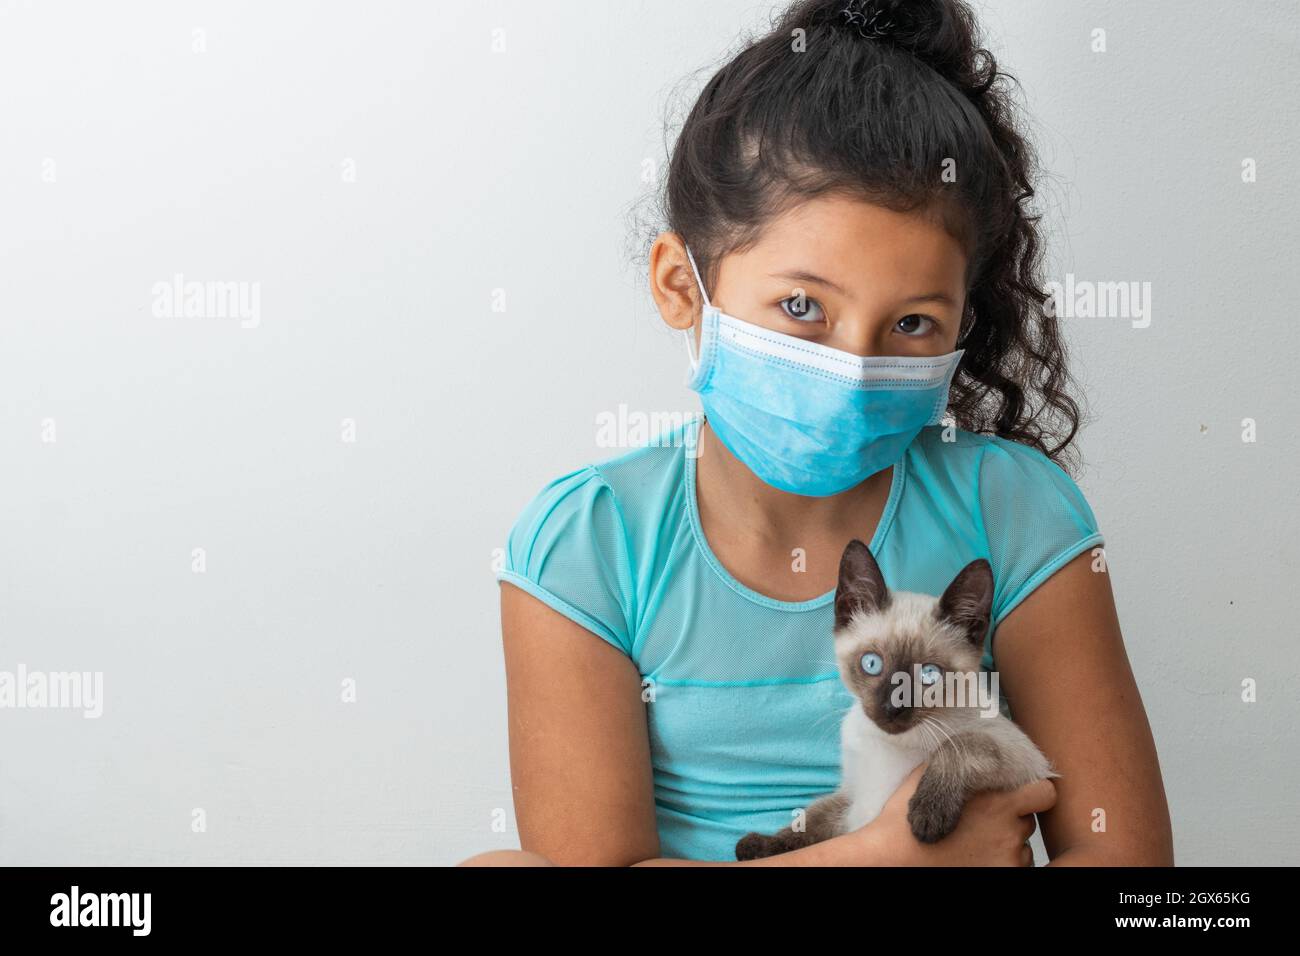 Bambina (8 anni) seduta con un gatto siamese nelle mani, ragazza marrone con una maschera chirurgica blu. Concetto medico, farmaceutico e sanitario. Foto Stock